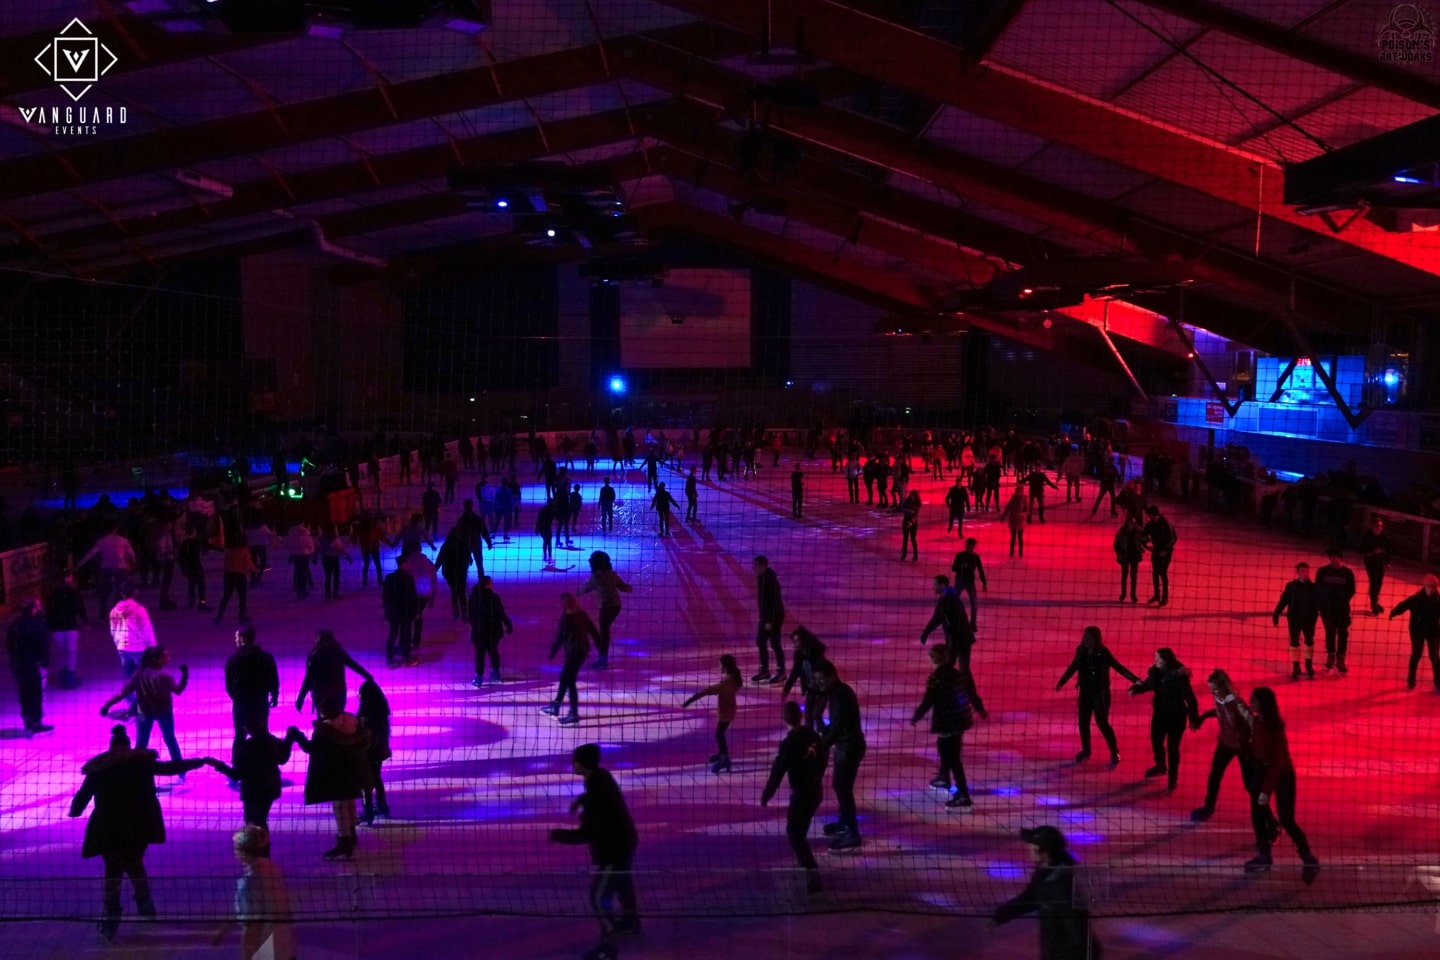 Evénement ‘Ice Clubbing’ à la patinoire de Nantes le 11 janvier 2020, organisé par Vanguard Events avec Trance In France.